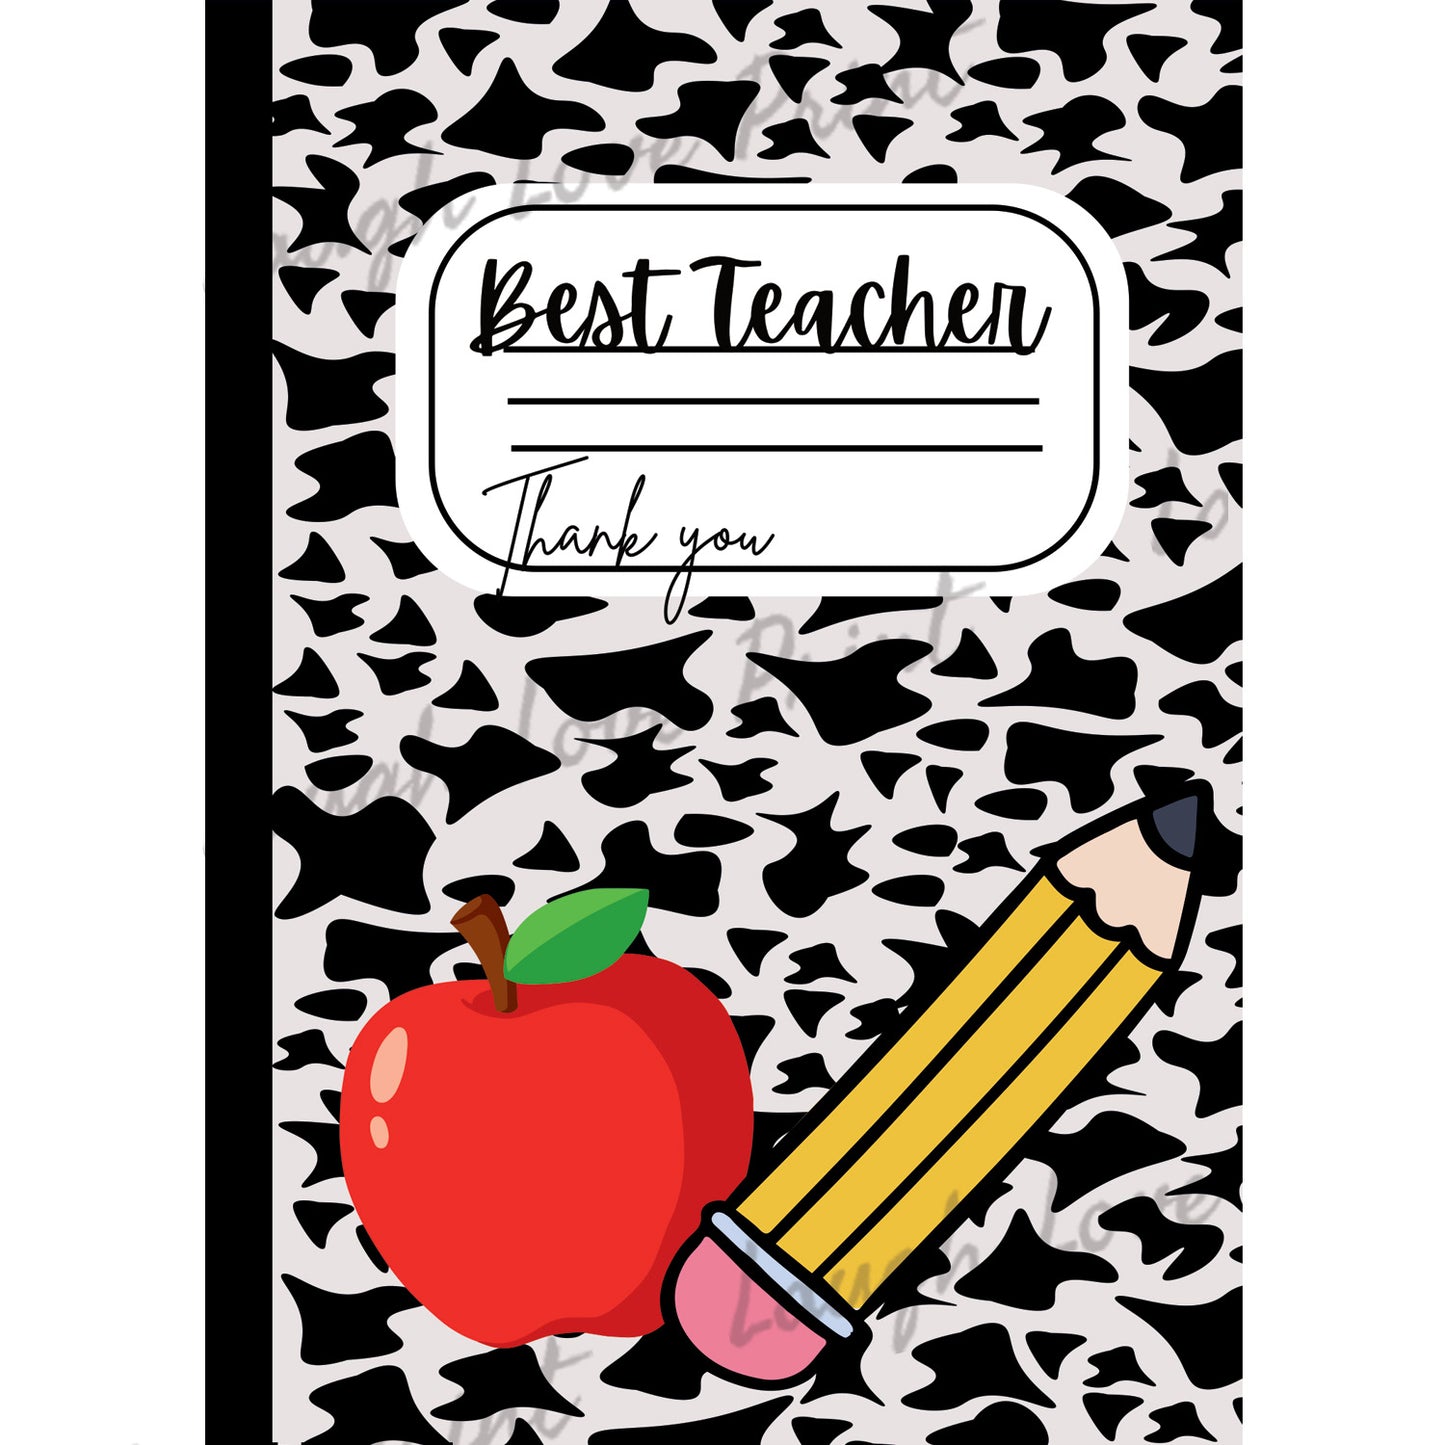 Best Teacher Gift Cover for gift card books